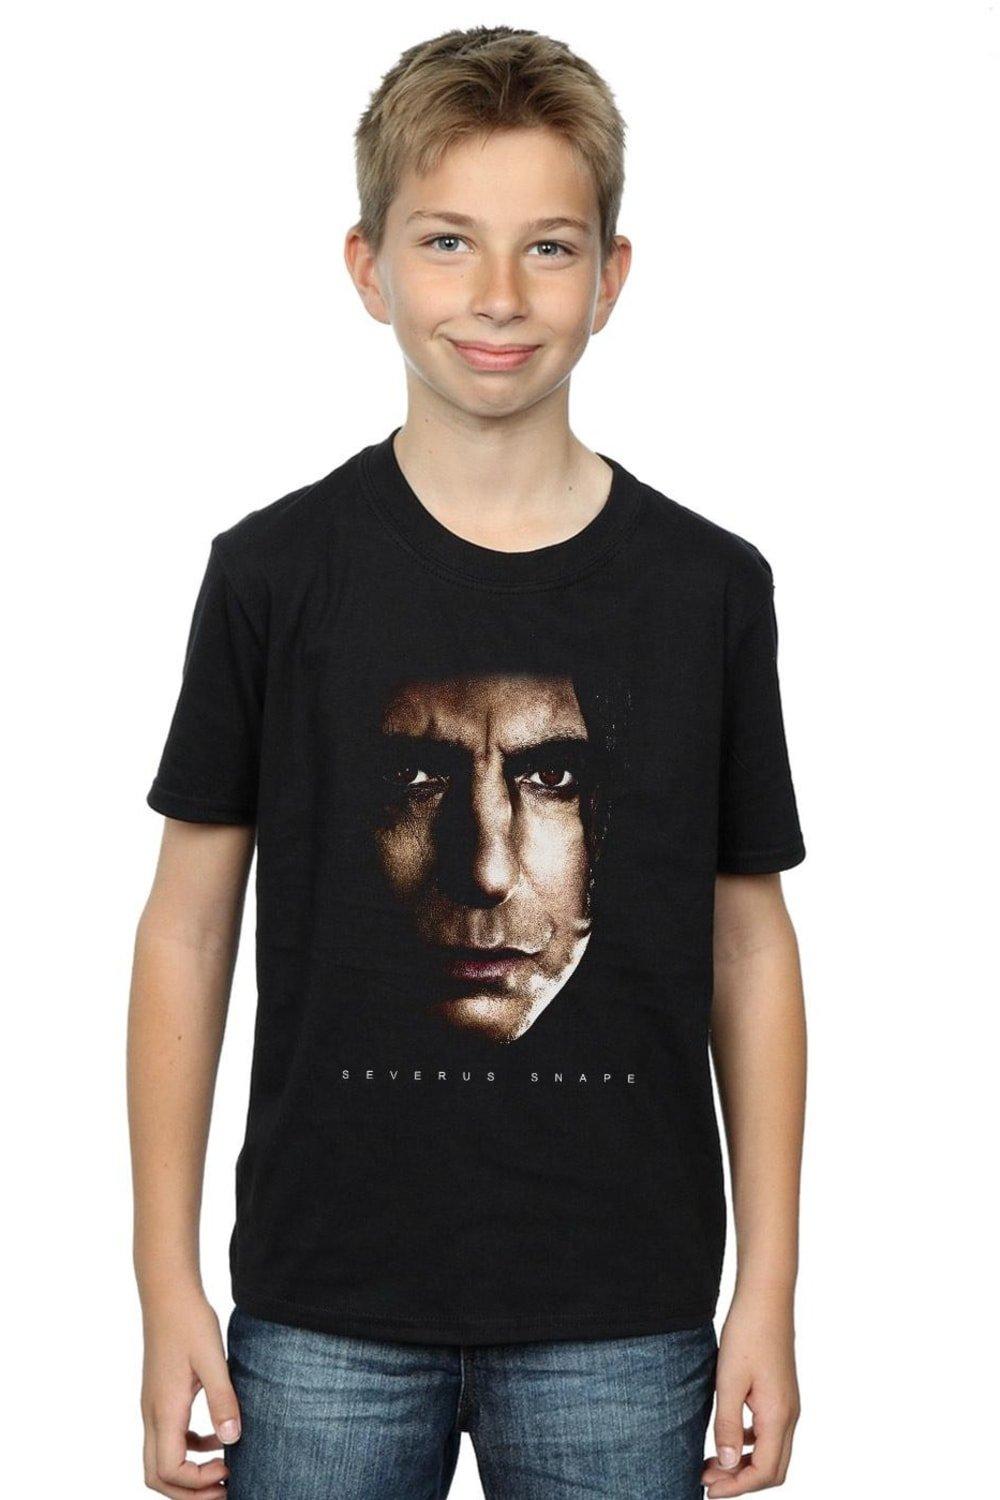 Severus Snape Portrait T-Shirt